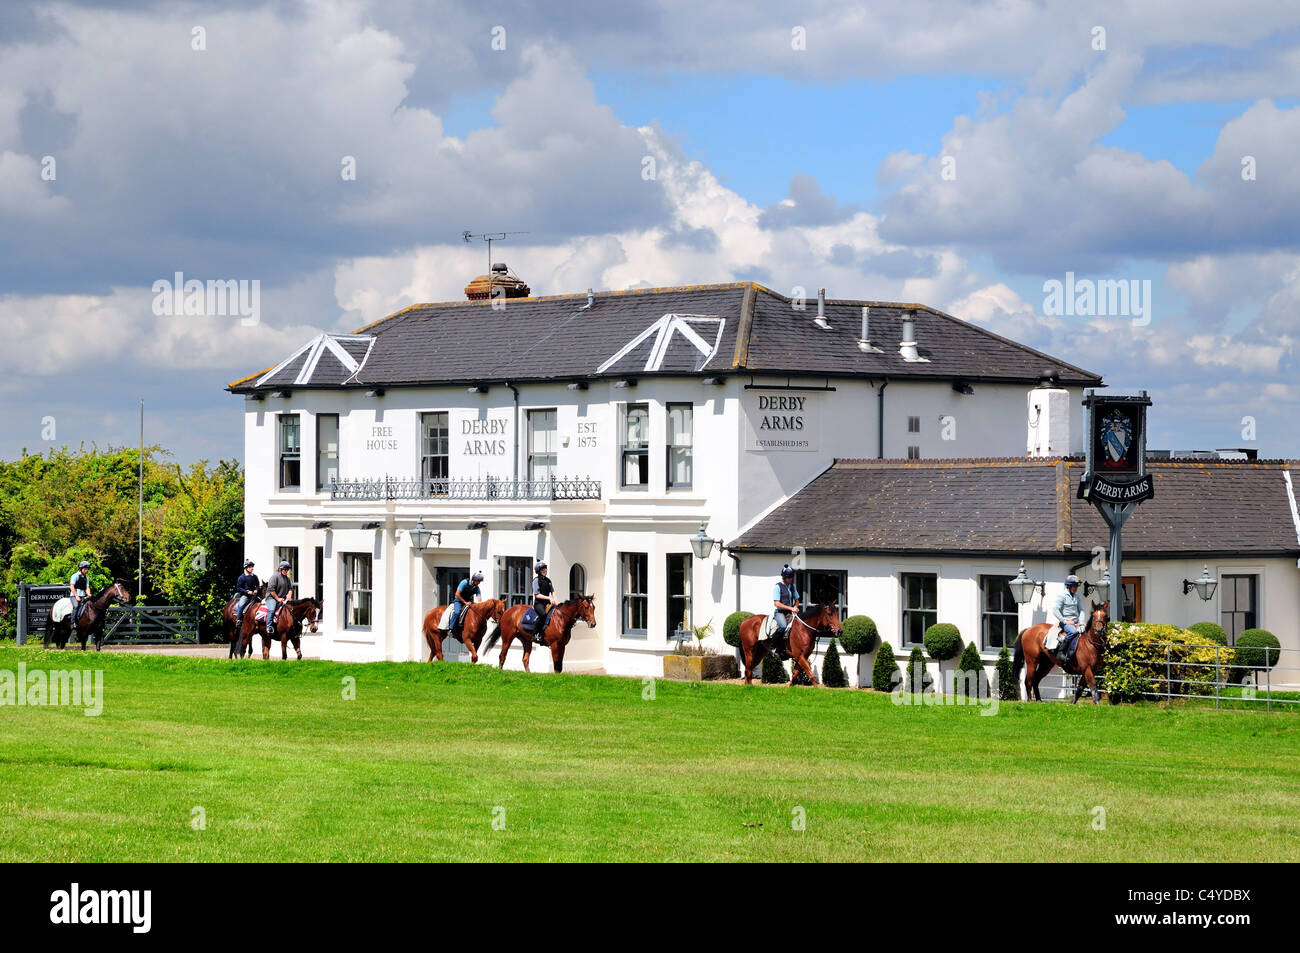 Rennpferde werden außerhalb des Derby Arms Pub, Surrey Epsom England UK, ausgeübt Stockfoto